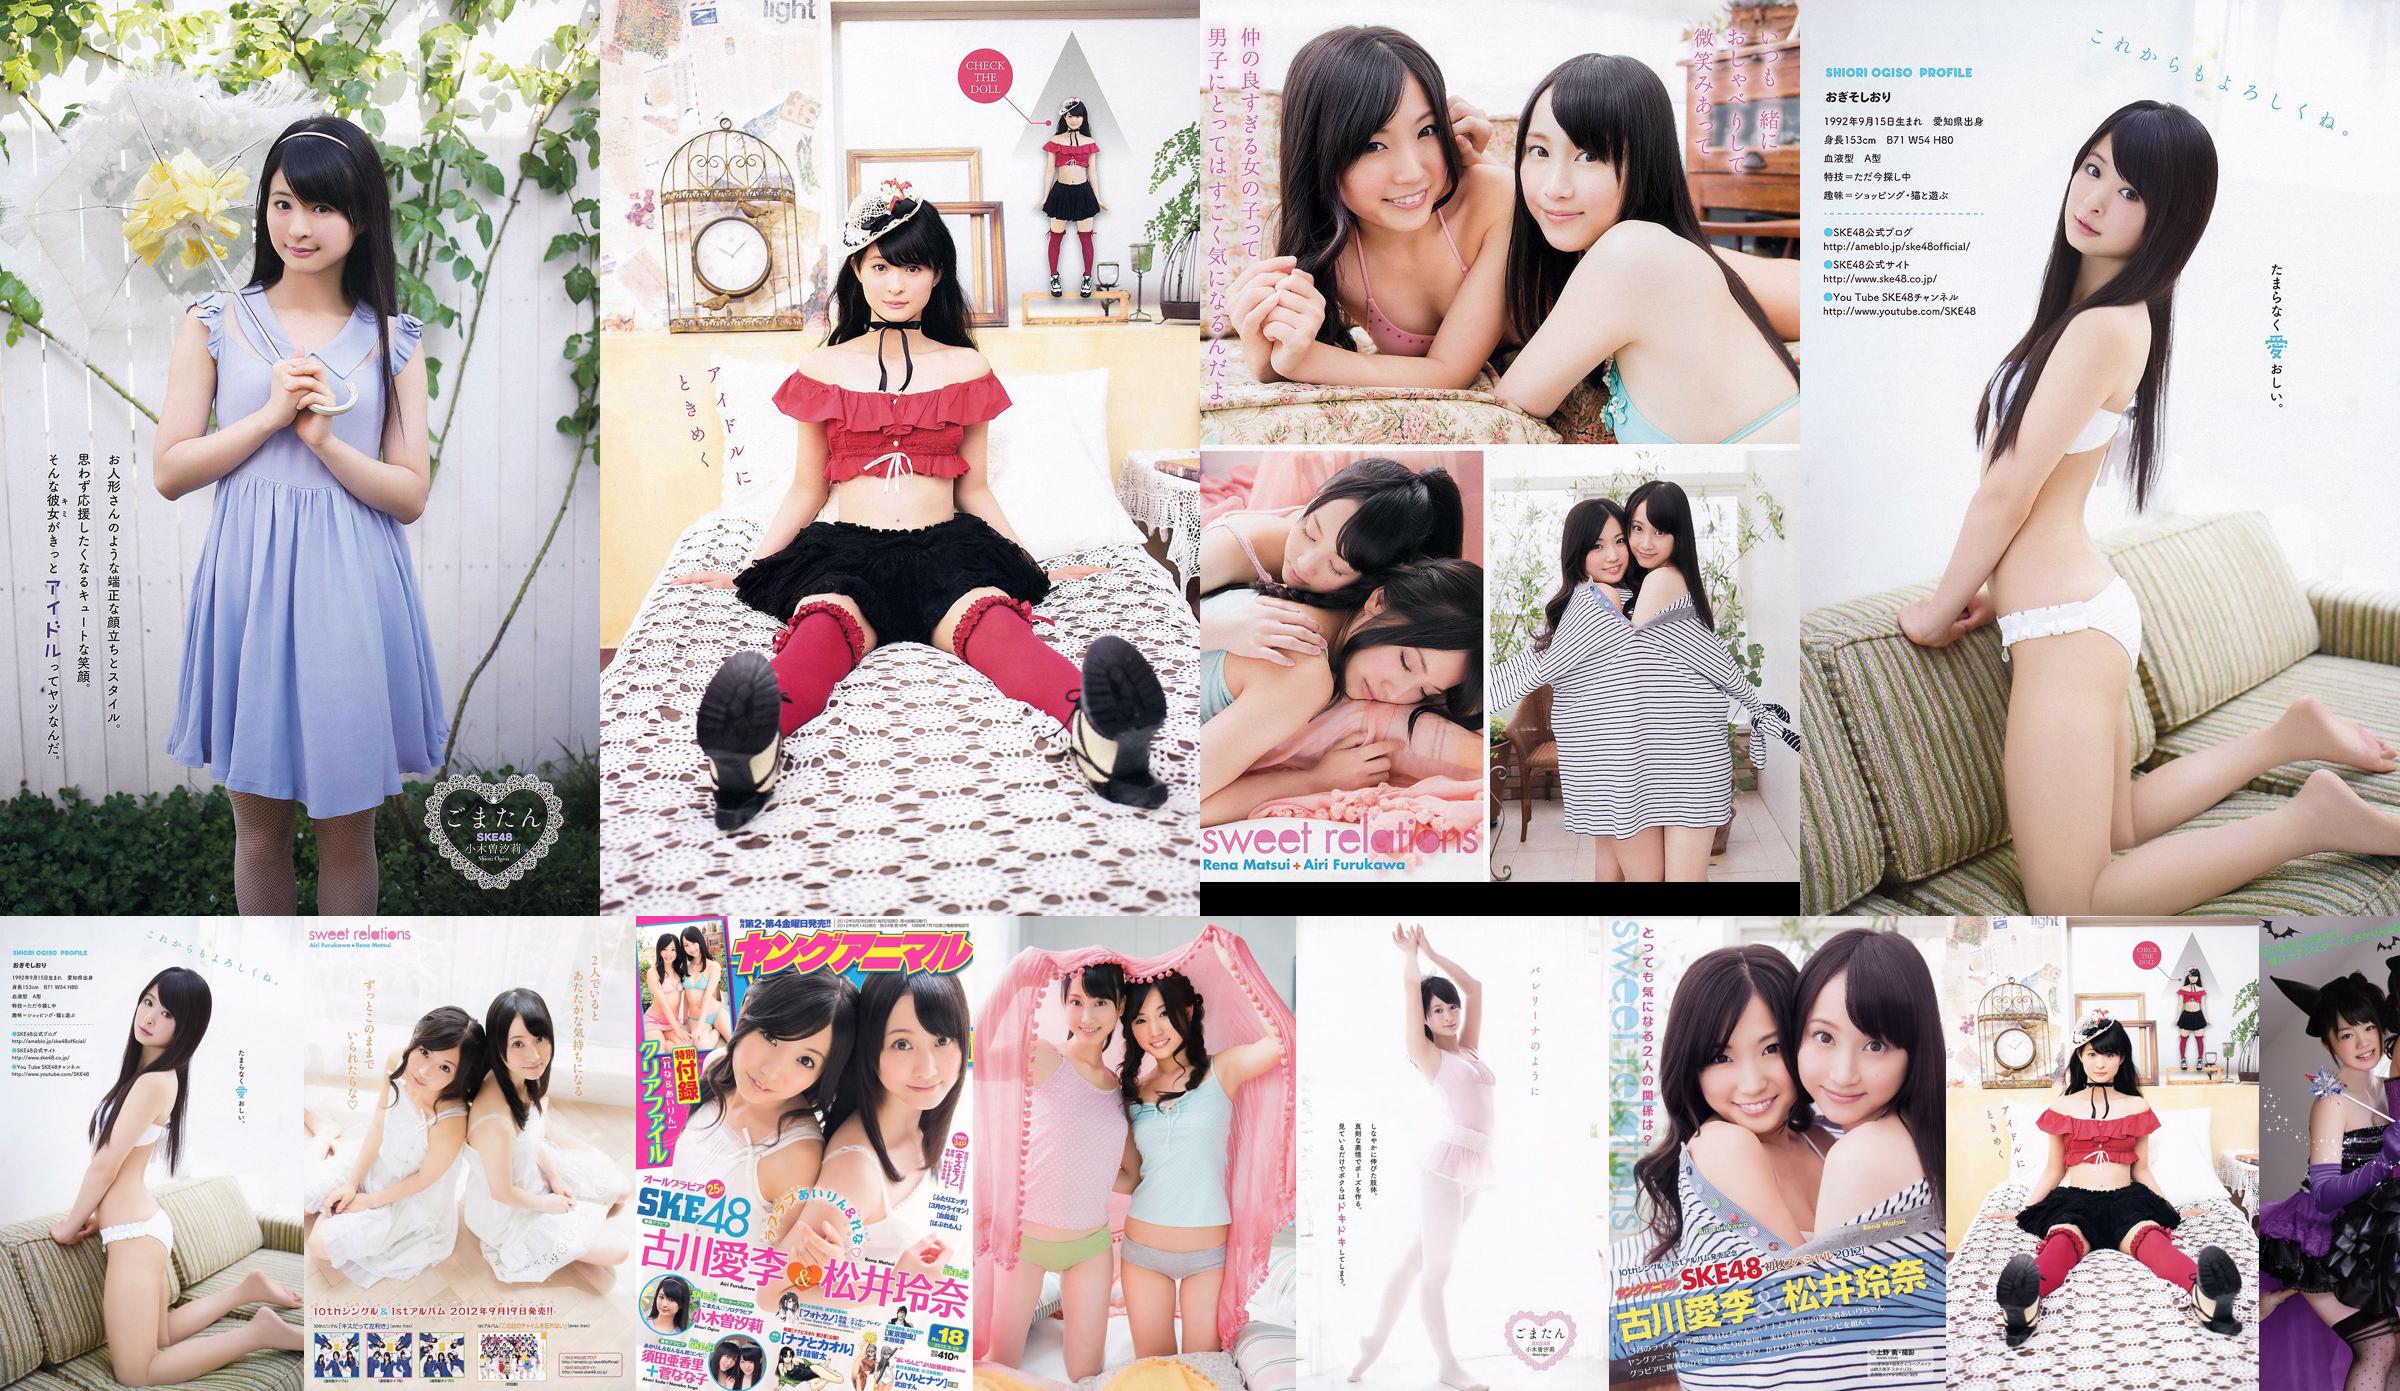 Ai Li Furukawa, Rena Matsui, Sasa Ogi, Aikari Suda [Animal jovem] 2012 No.18 Photo Magazine No.a7b11d Página 1